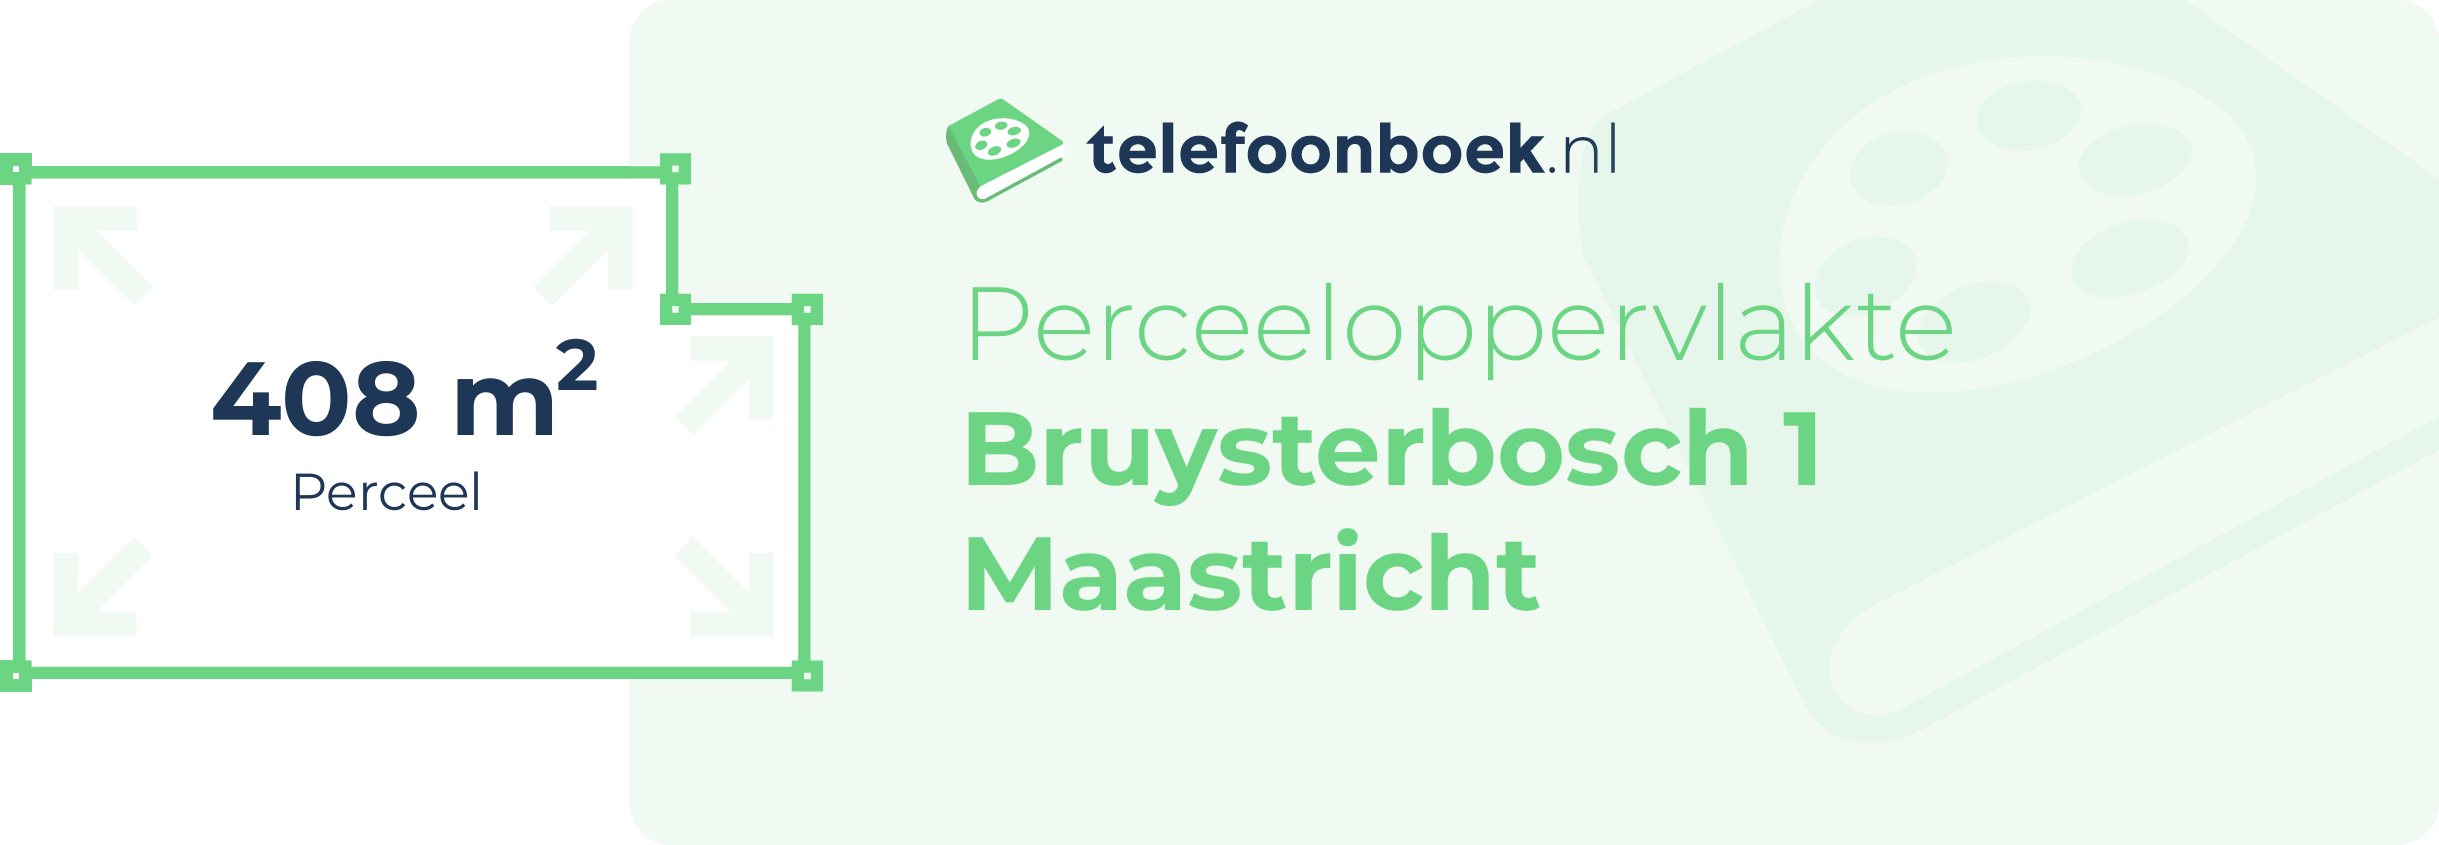 Perceeloppervlakte Bruysterbosch 1 Maastricht